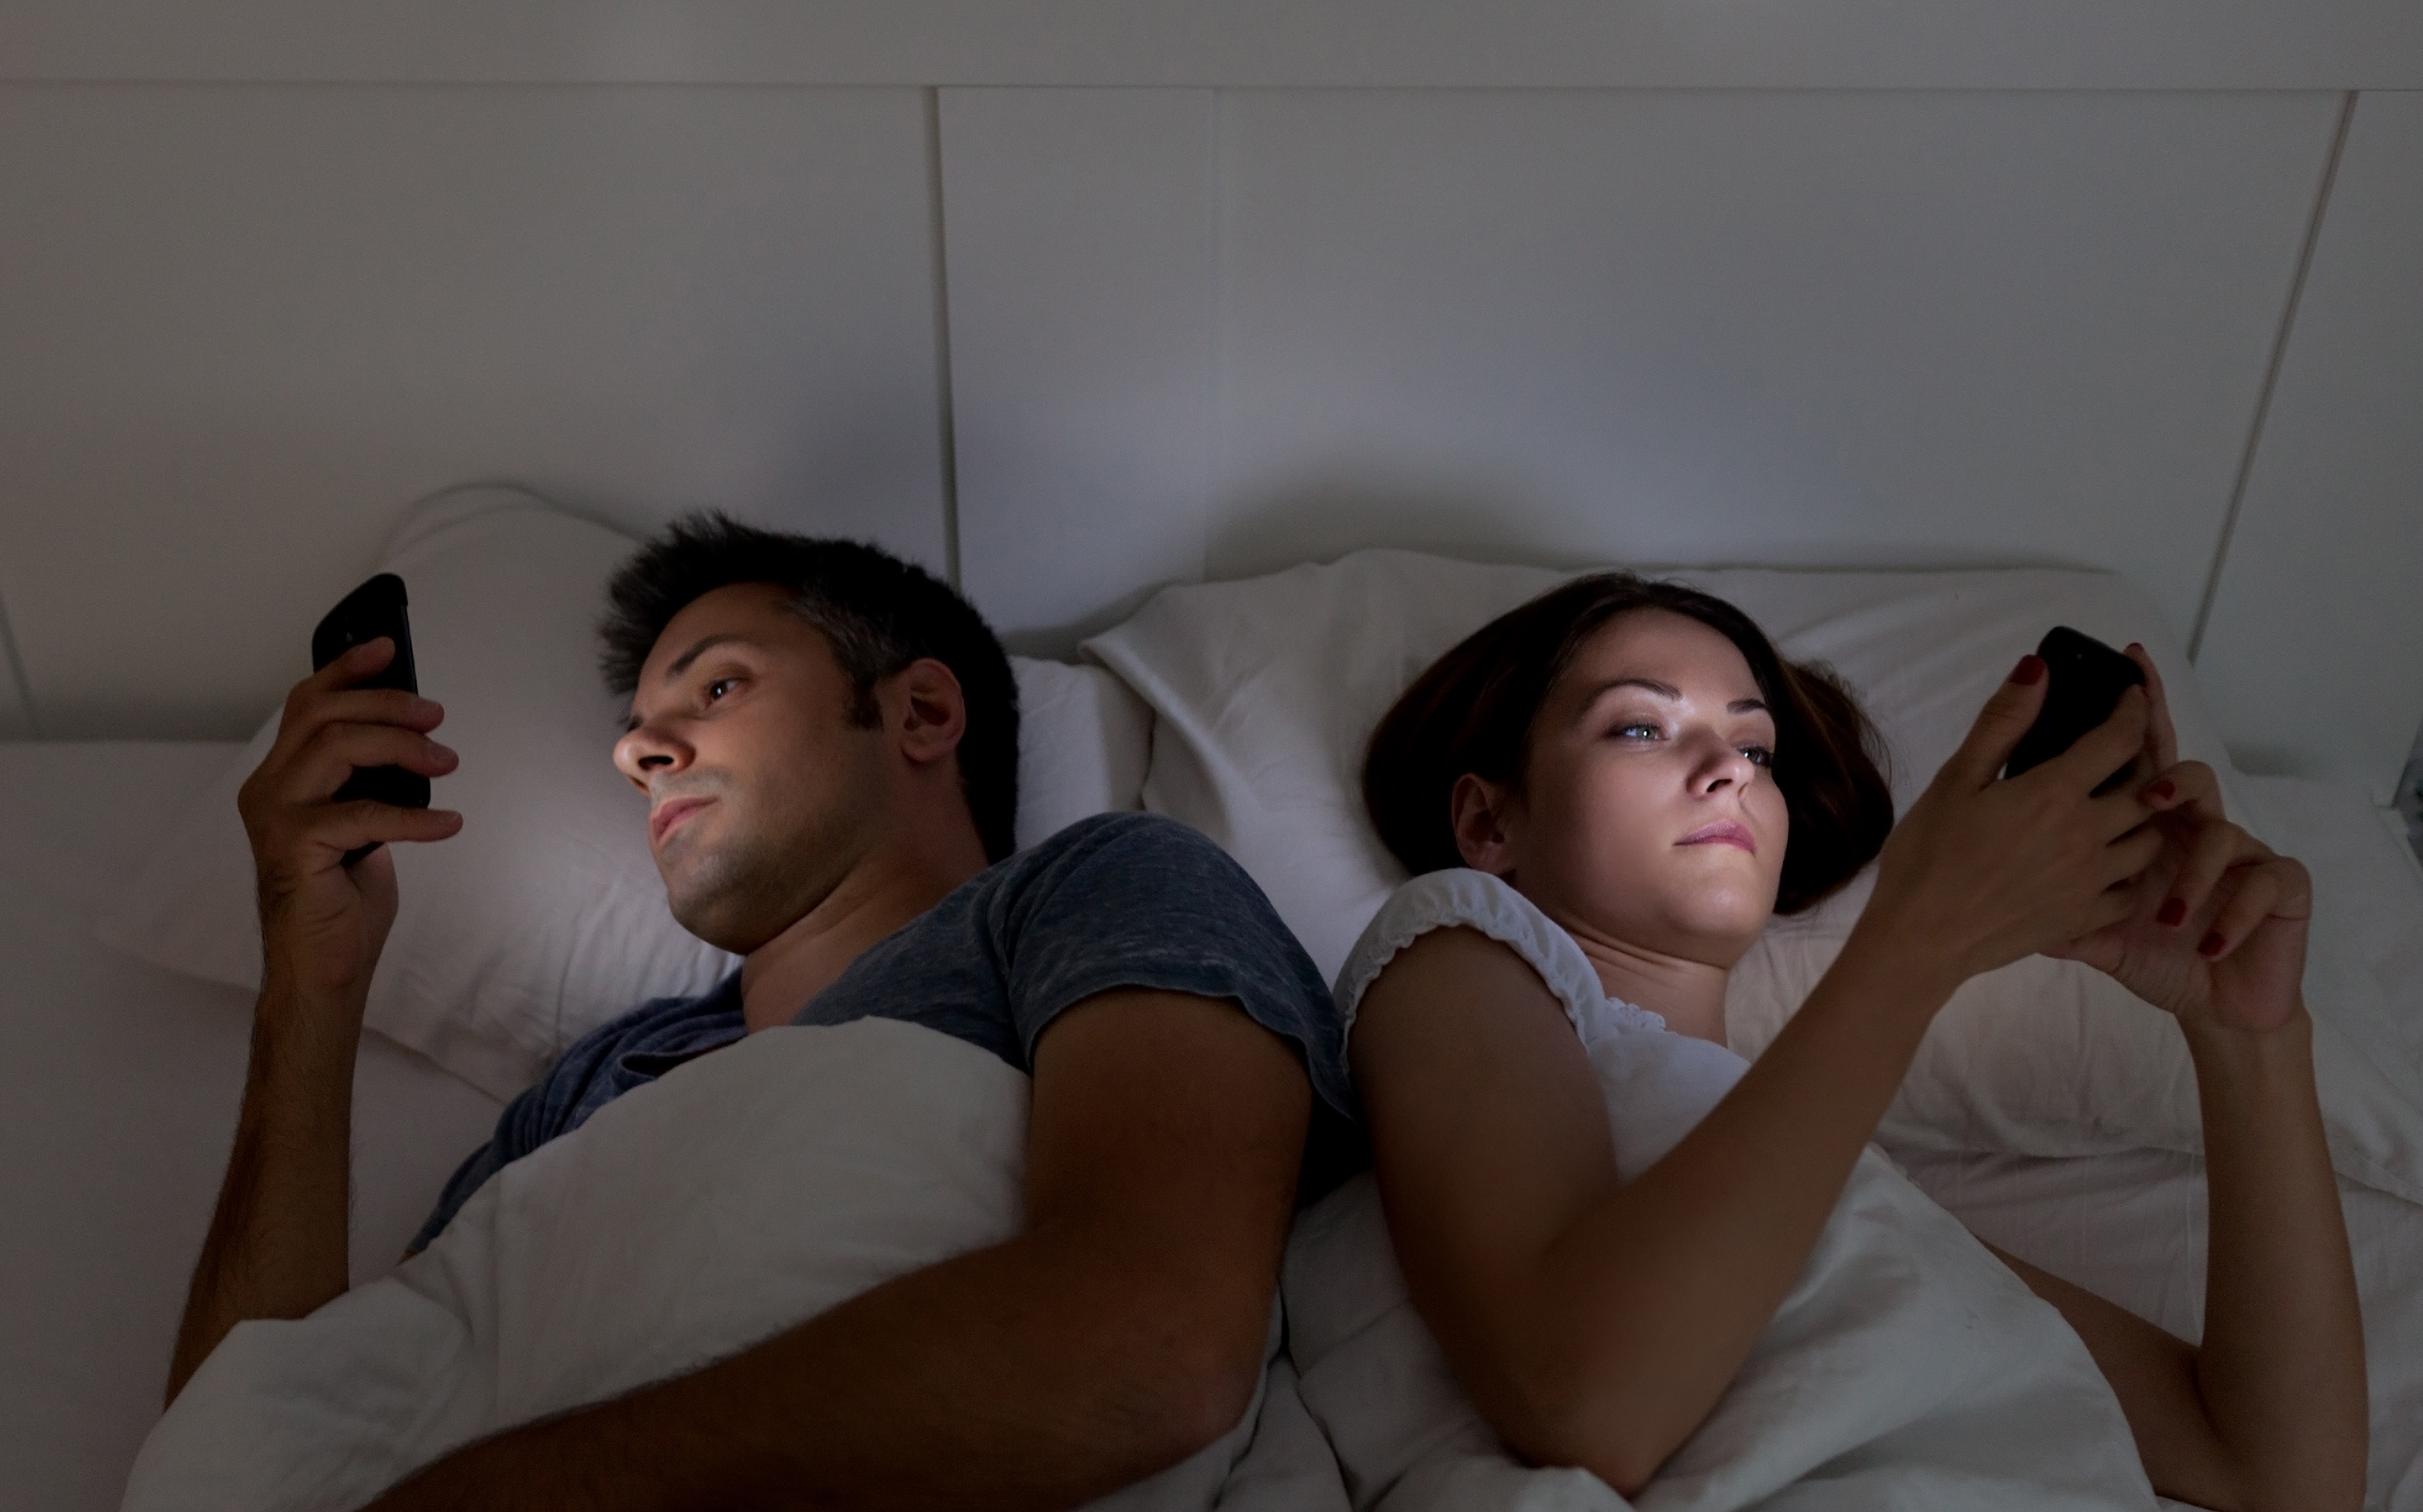 Smartphones disrupt sleep